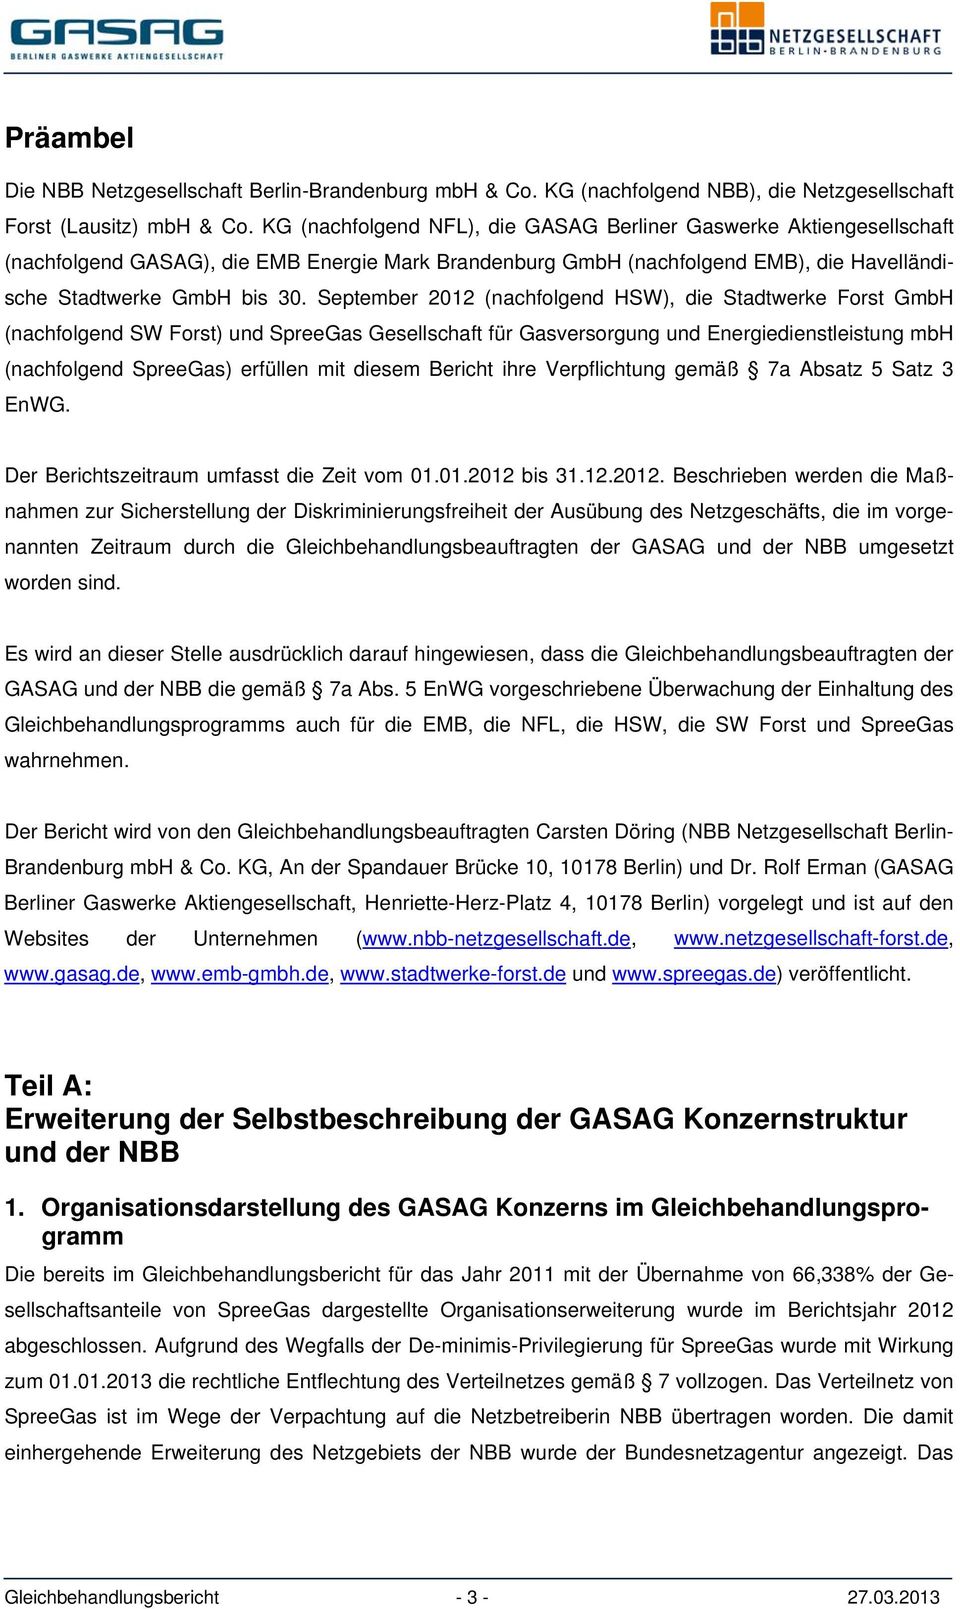 September 2012 (nachfolgend HSW), die Stadtwerke Forst GmbH (nachfolgend SW Forst) und SpreeGas Gesellschaft für Gasversorgung und Energiedienstleistung mbh (nachfolgend SpreeGas) erfüllen mit diesem